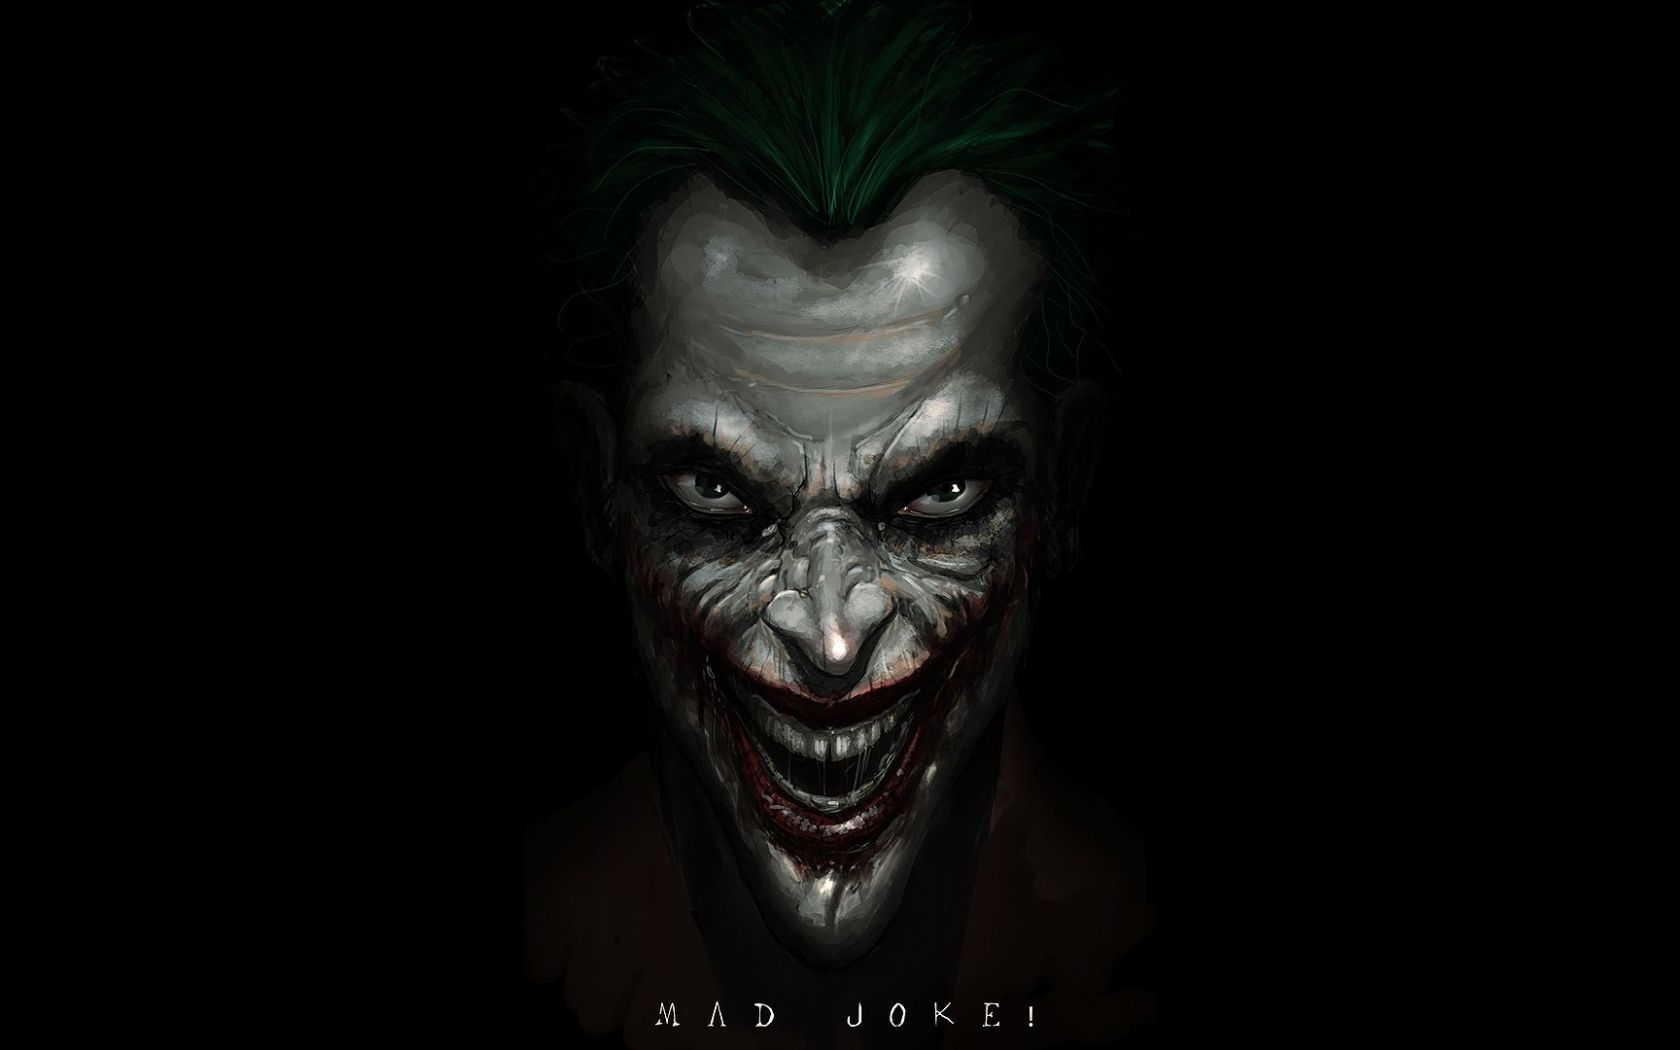 Free download DC Comics The Joker fan art black background